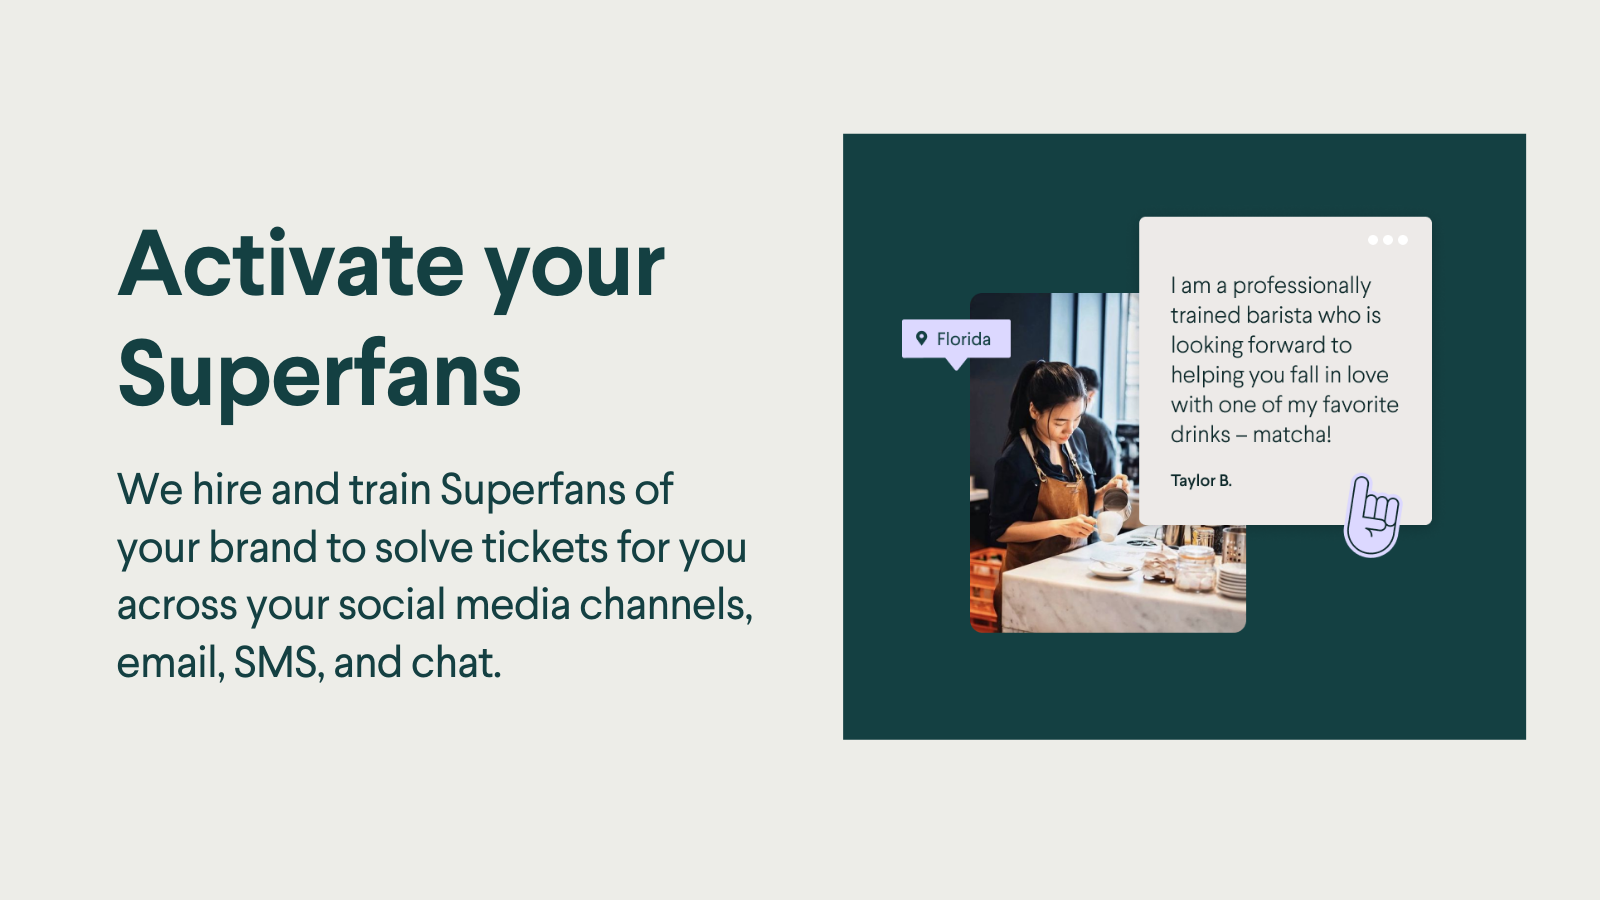 Nous formons les Superfans de votre marque pour résoudre vos tickets